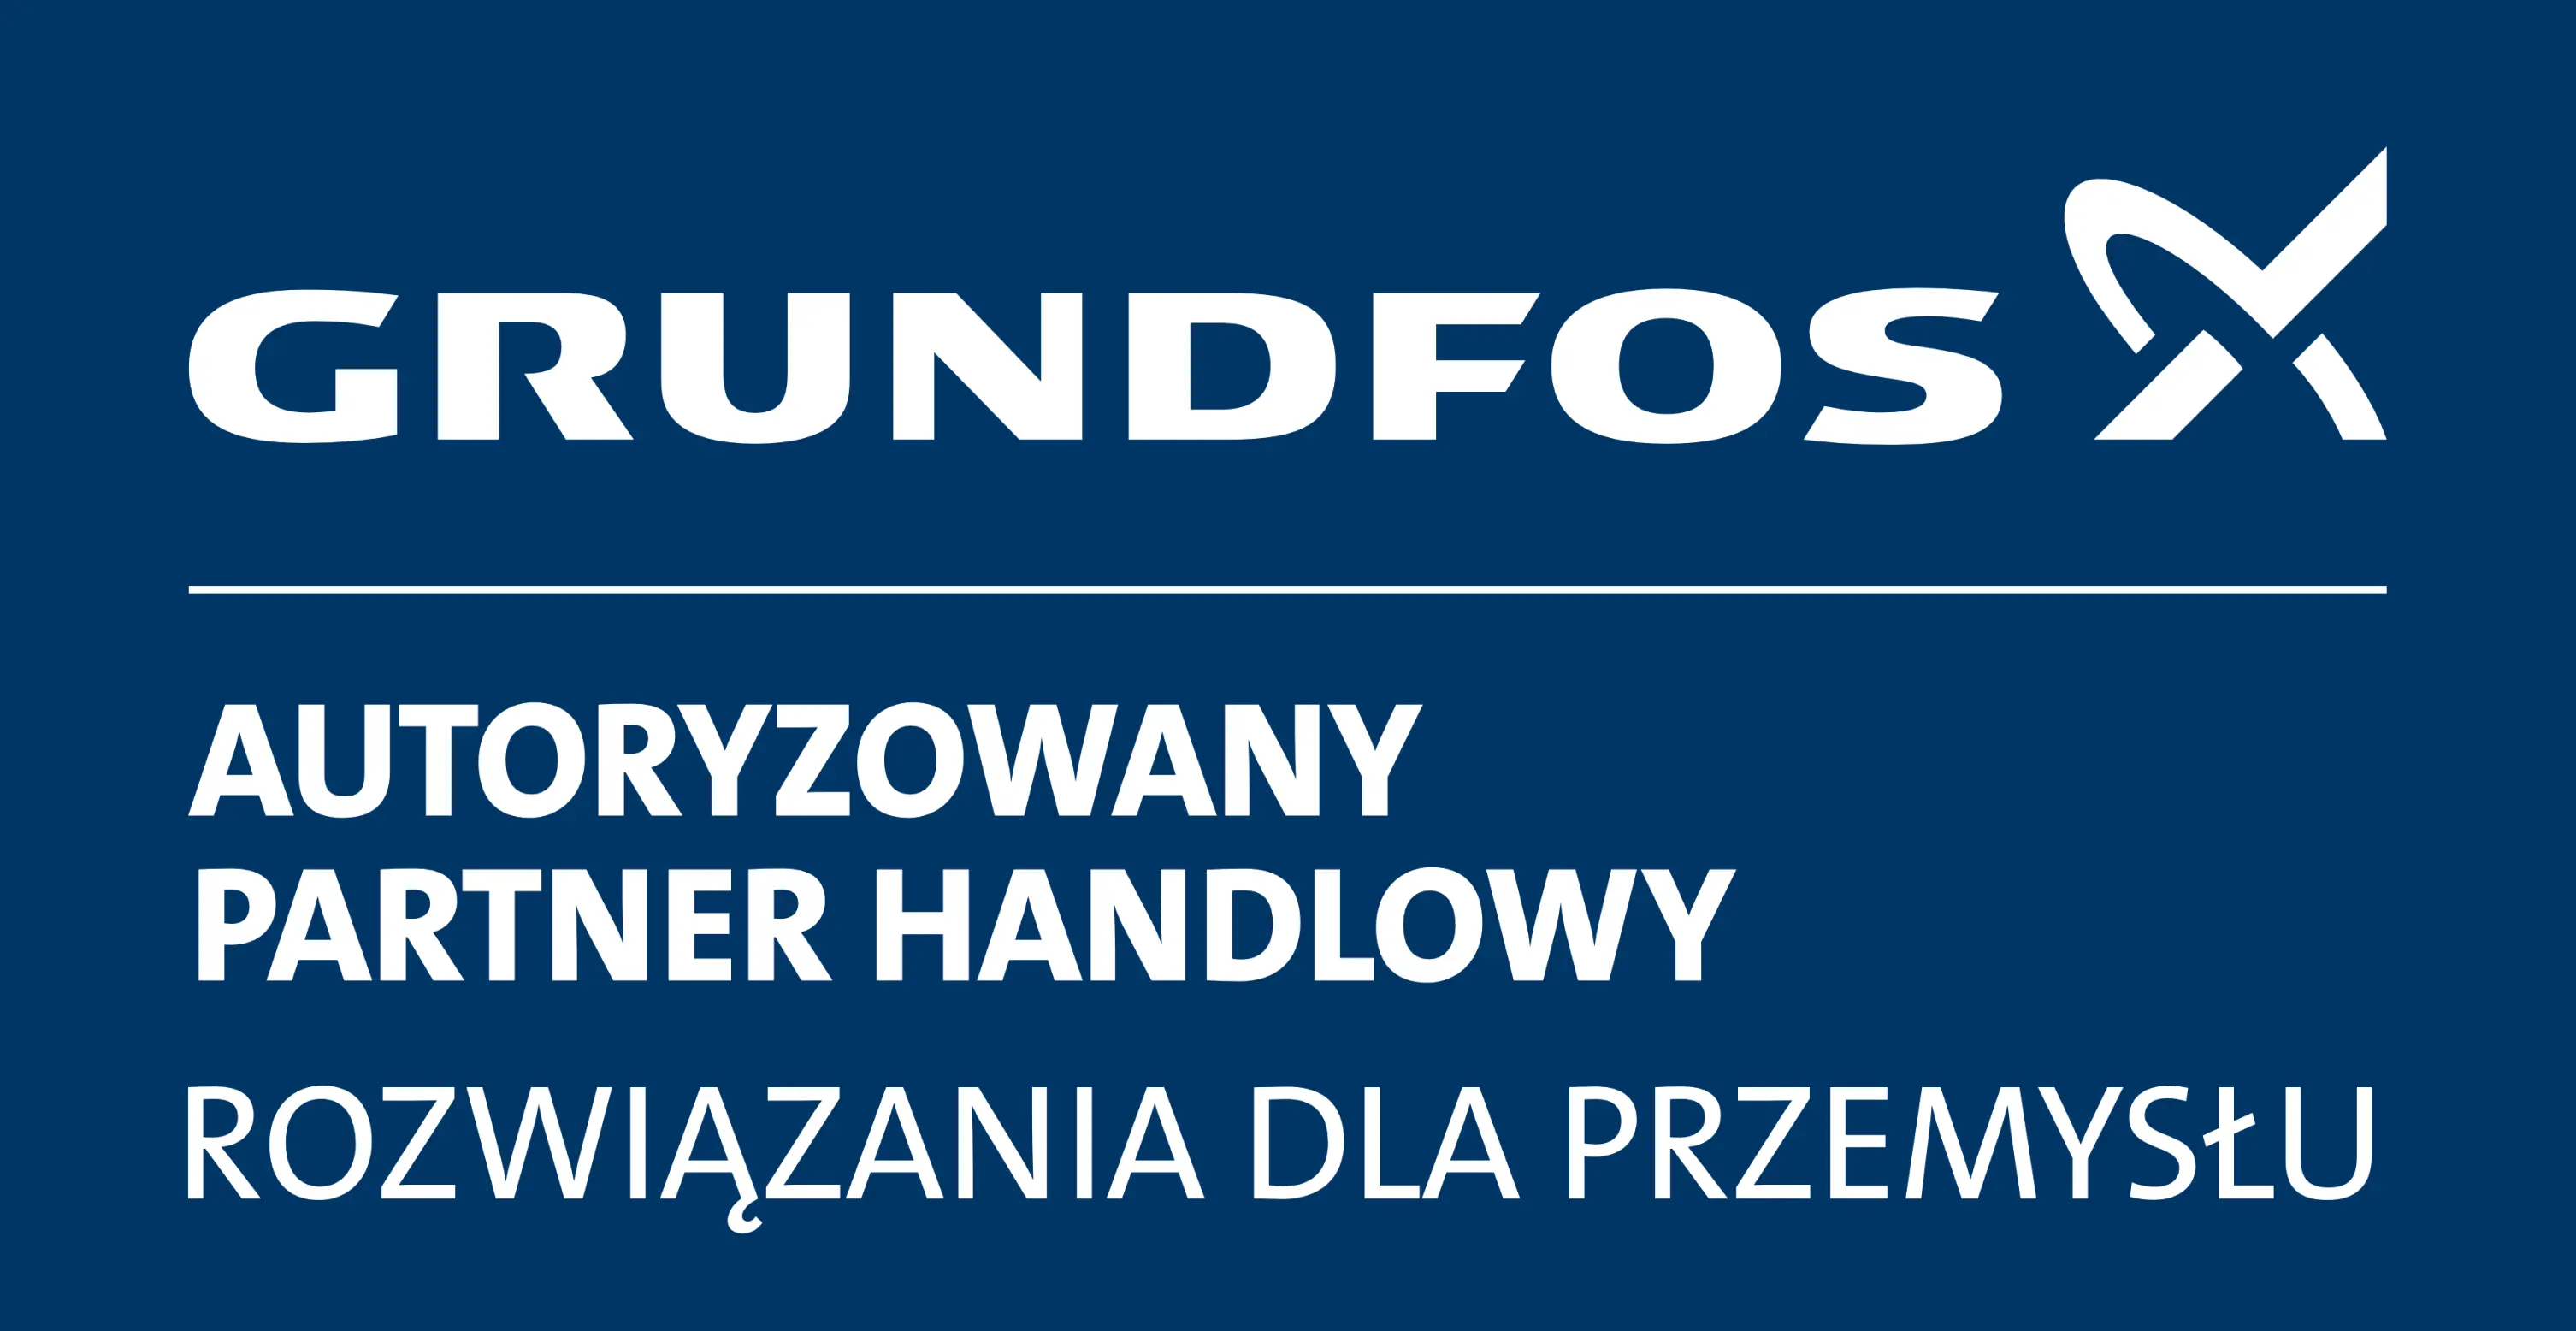 Grundfos - Autoryzowany Partner Handlowy